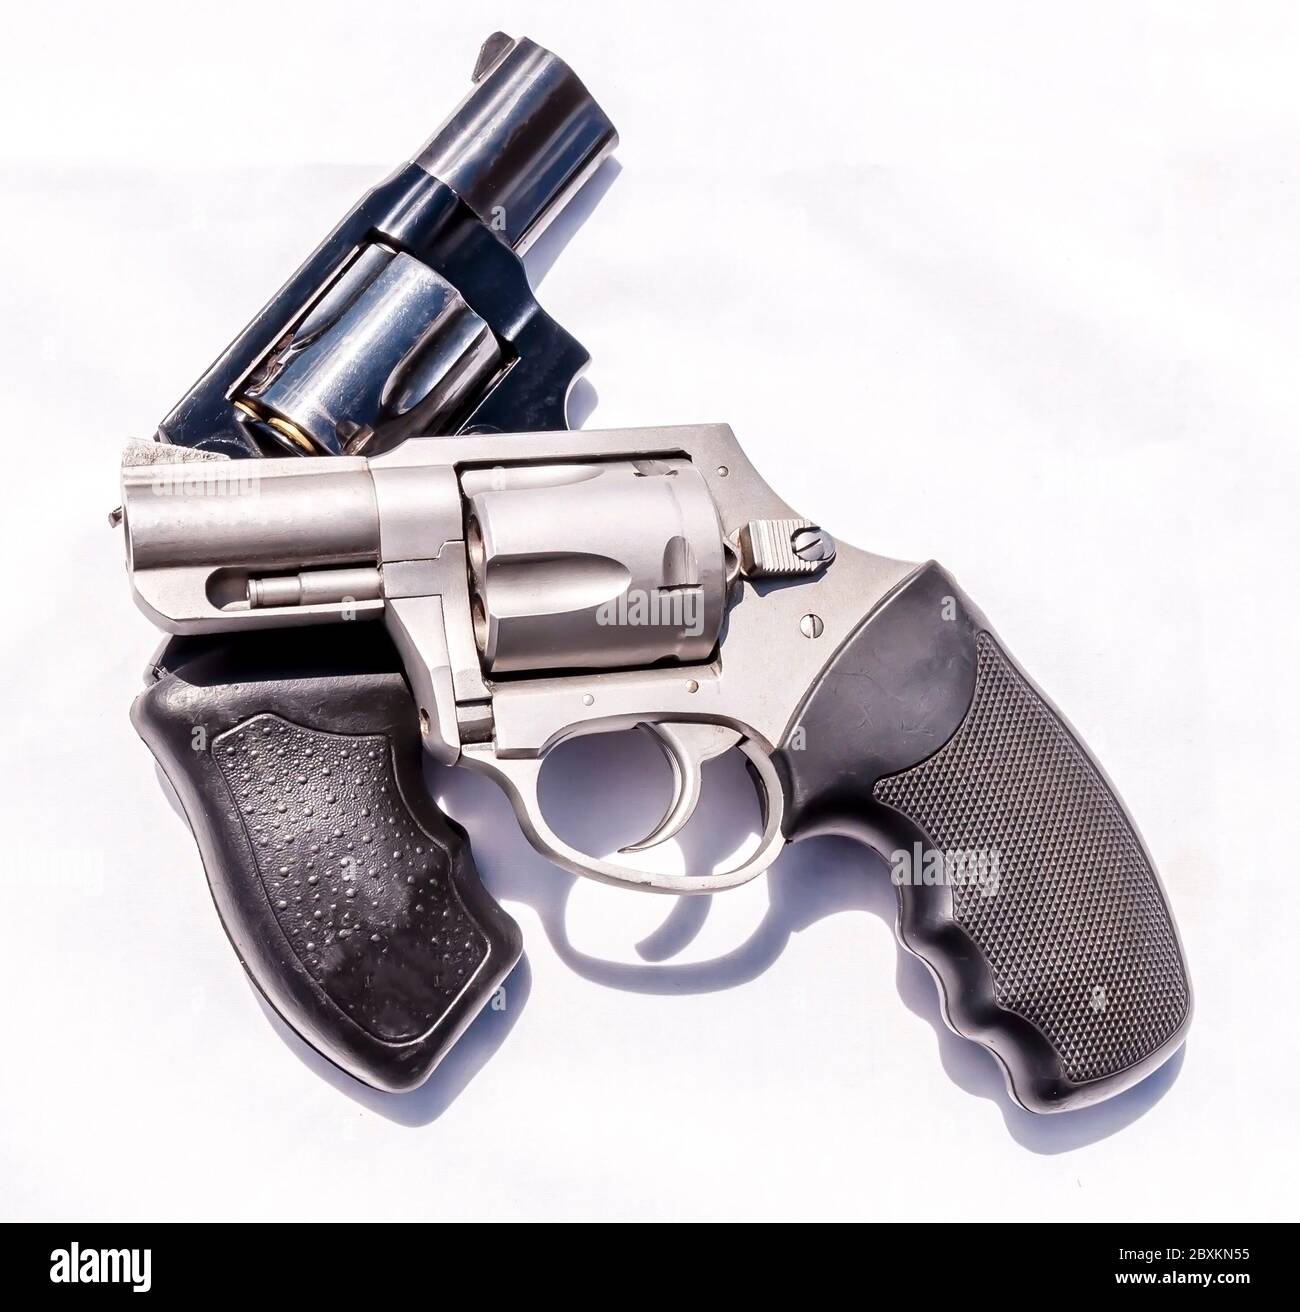 38 Special Revolver Stock Photo by ©sframe 20939601